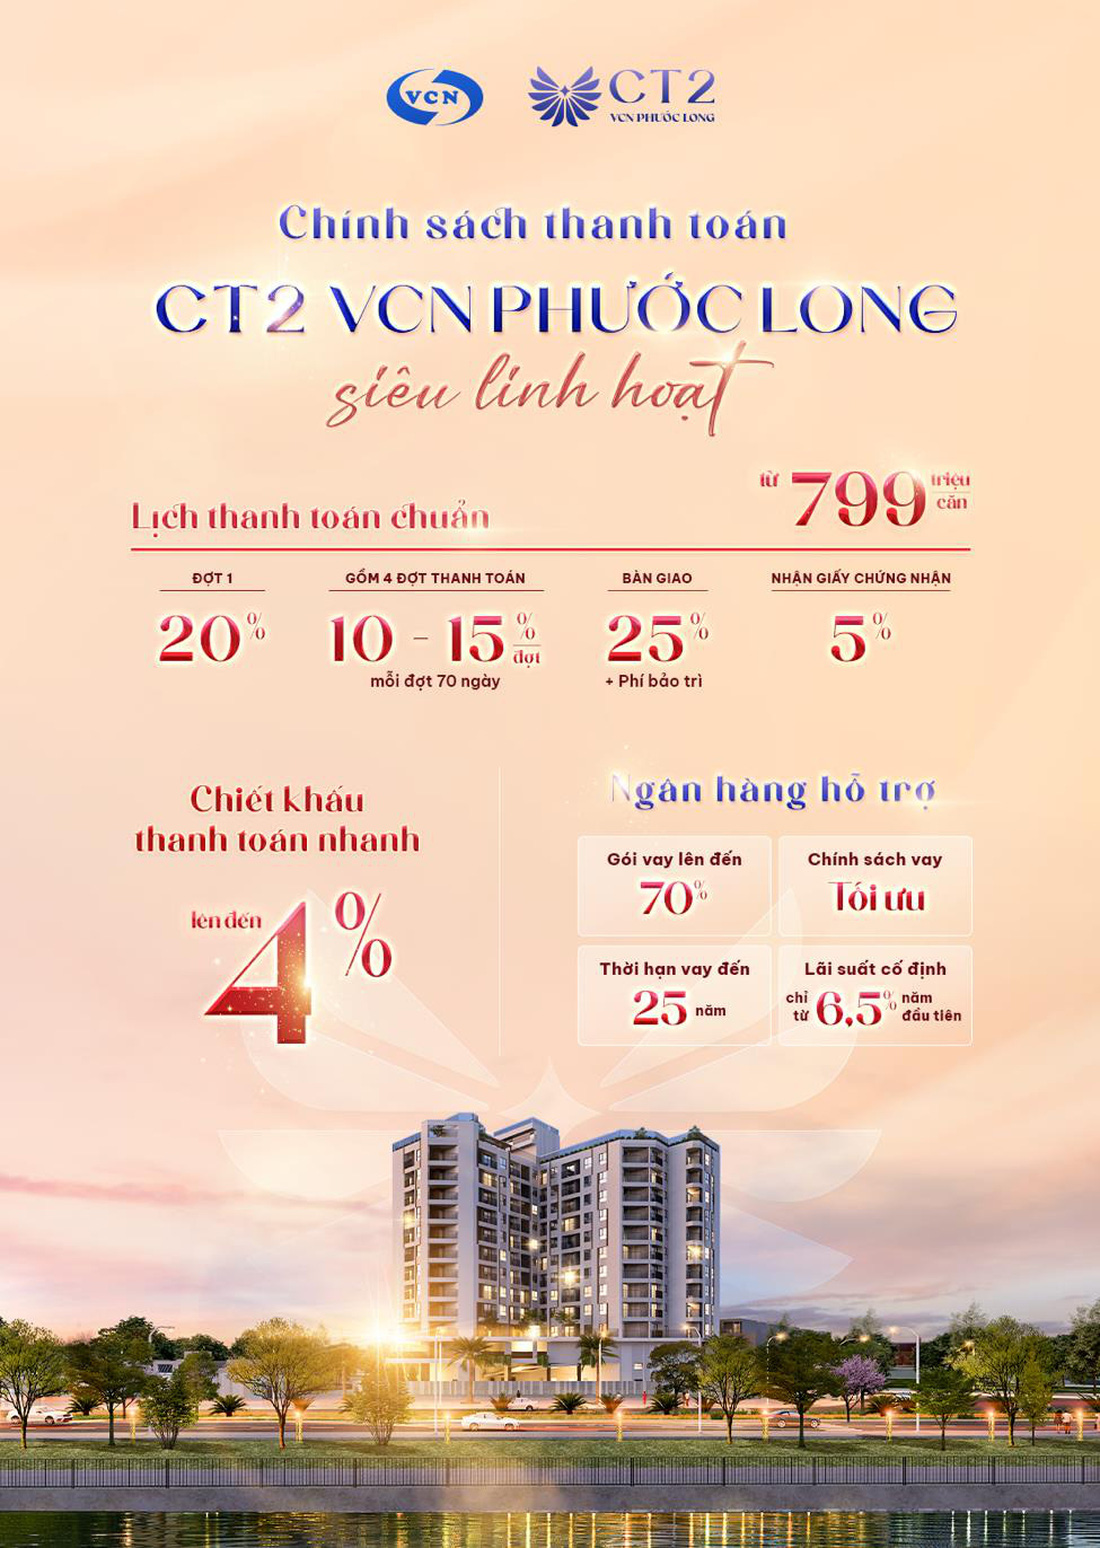 Mở bán căn hộ cao cấp CT2 VCN Phước Long chỉ từ 799 triệu đồng- Ảnh 2.